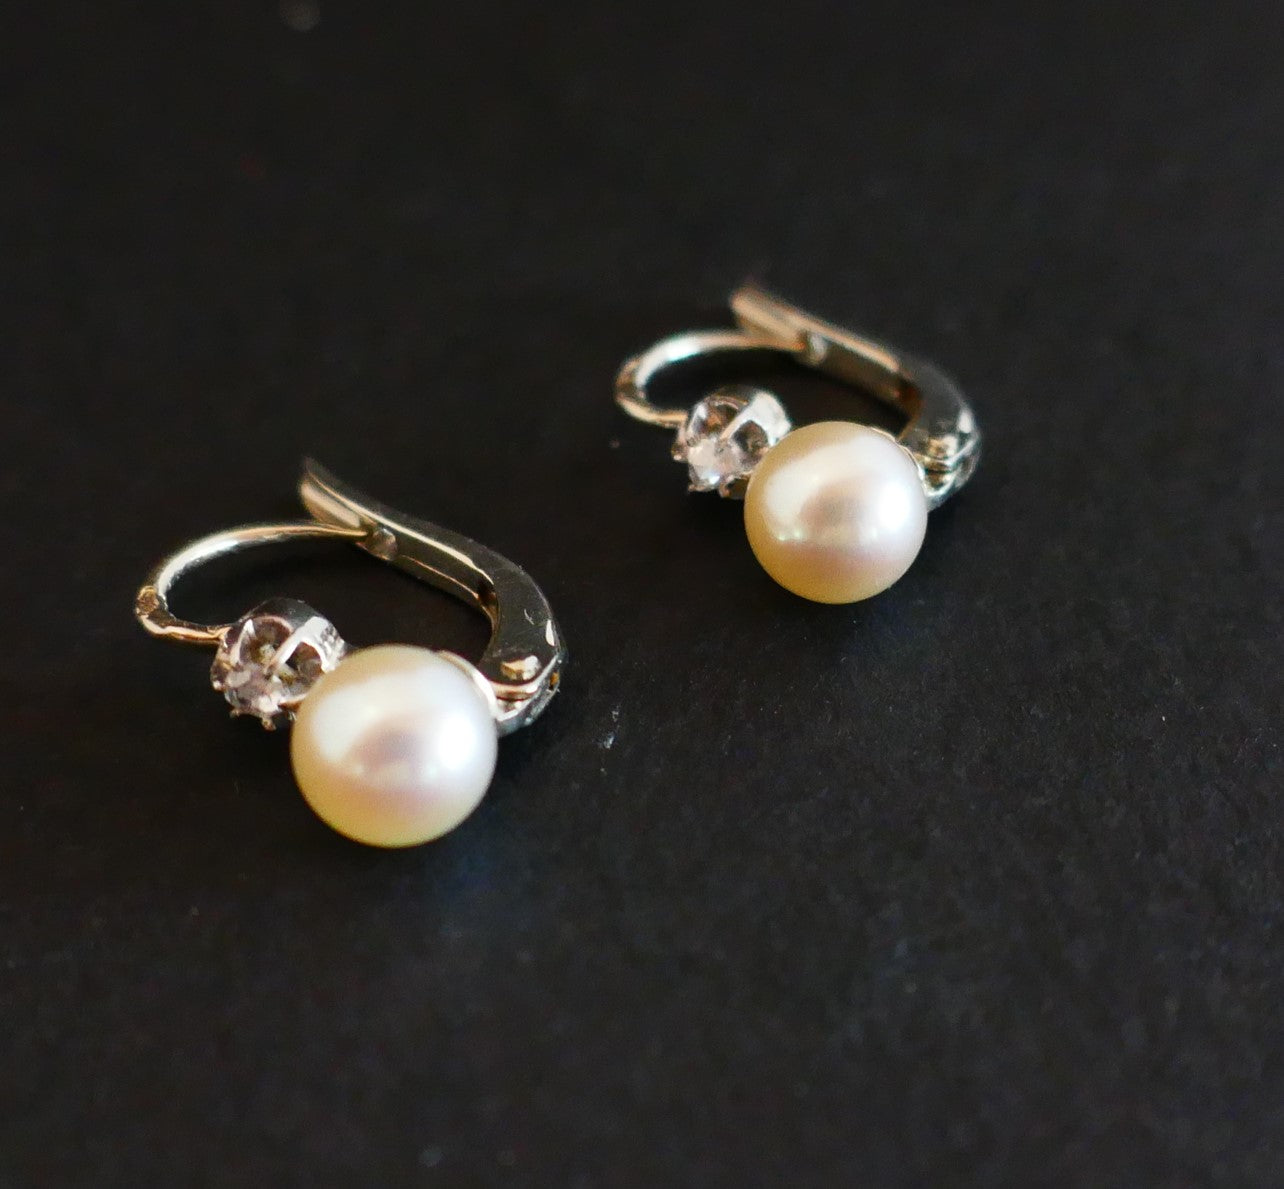 Boucles d'Oreilles Dormeuses Perles Et Diamants, Or Blanc 18 Carats.